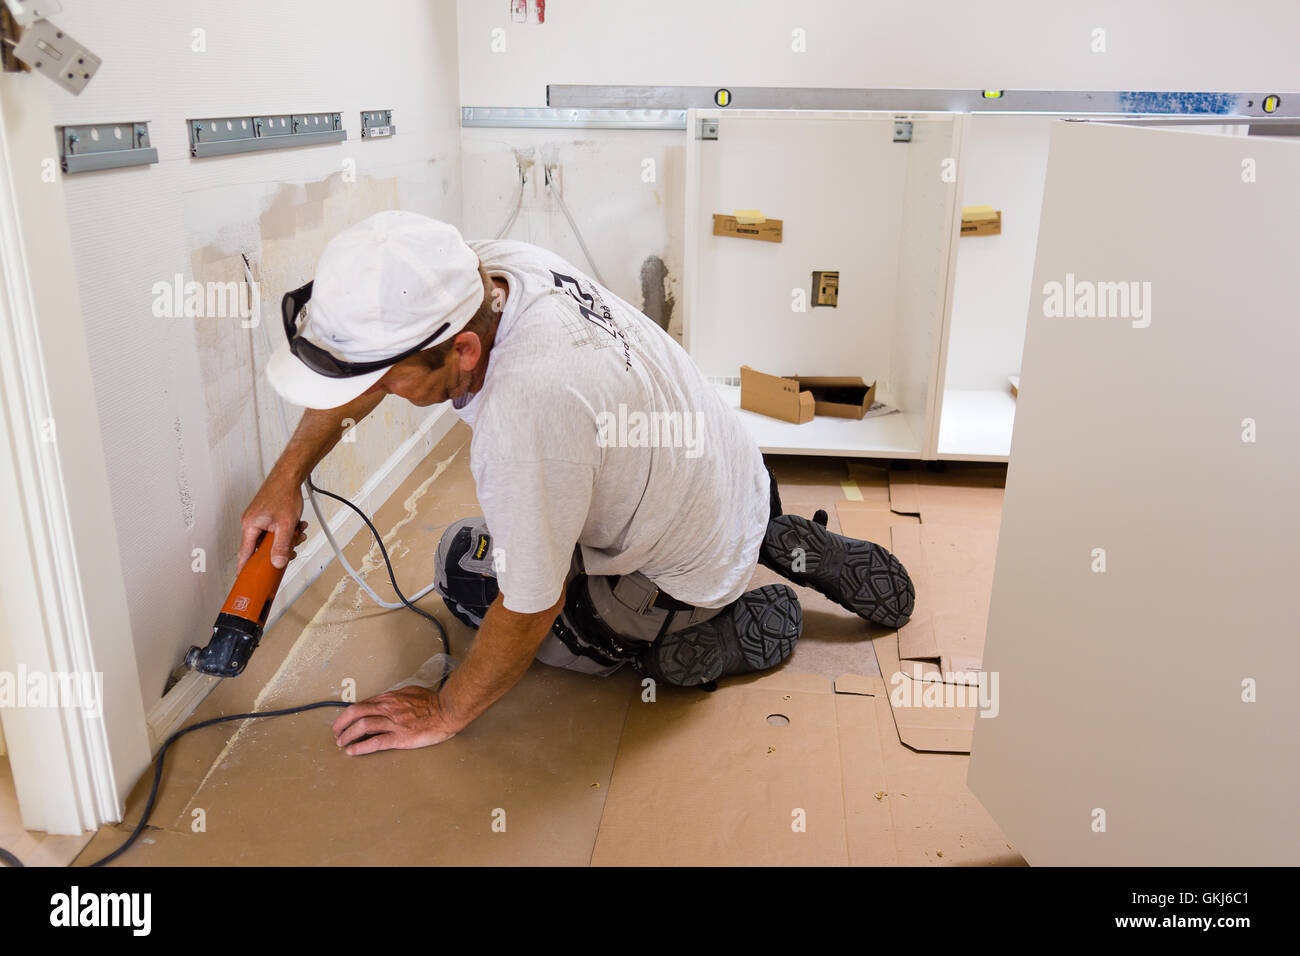 En el trabajo de carpintero, montar una cocina IKEA Foto de stock